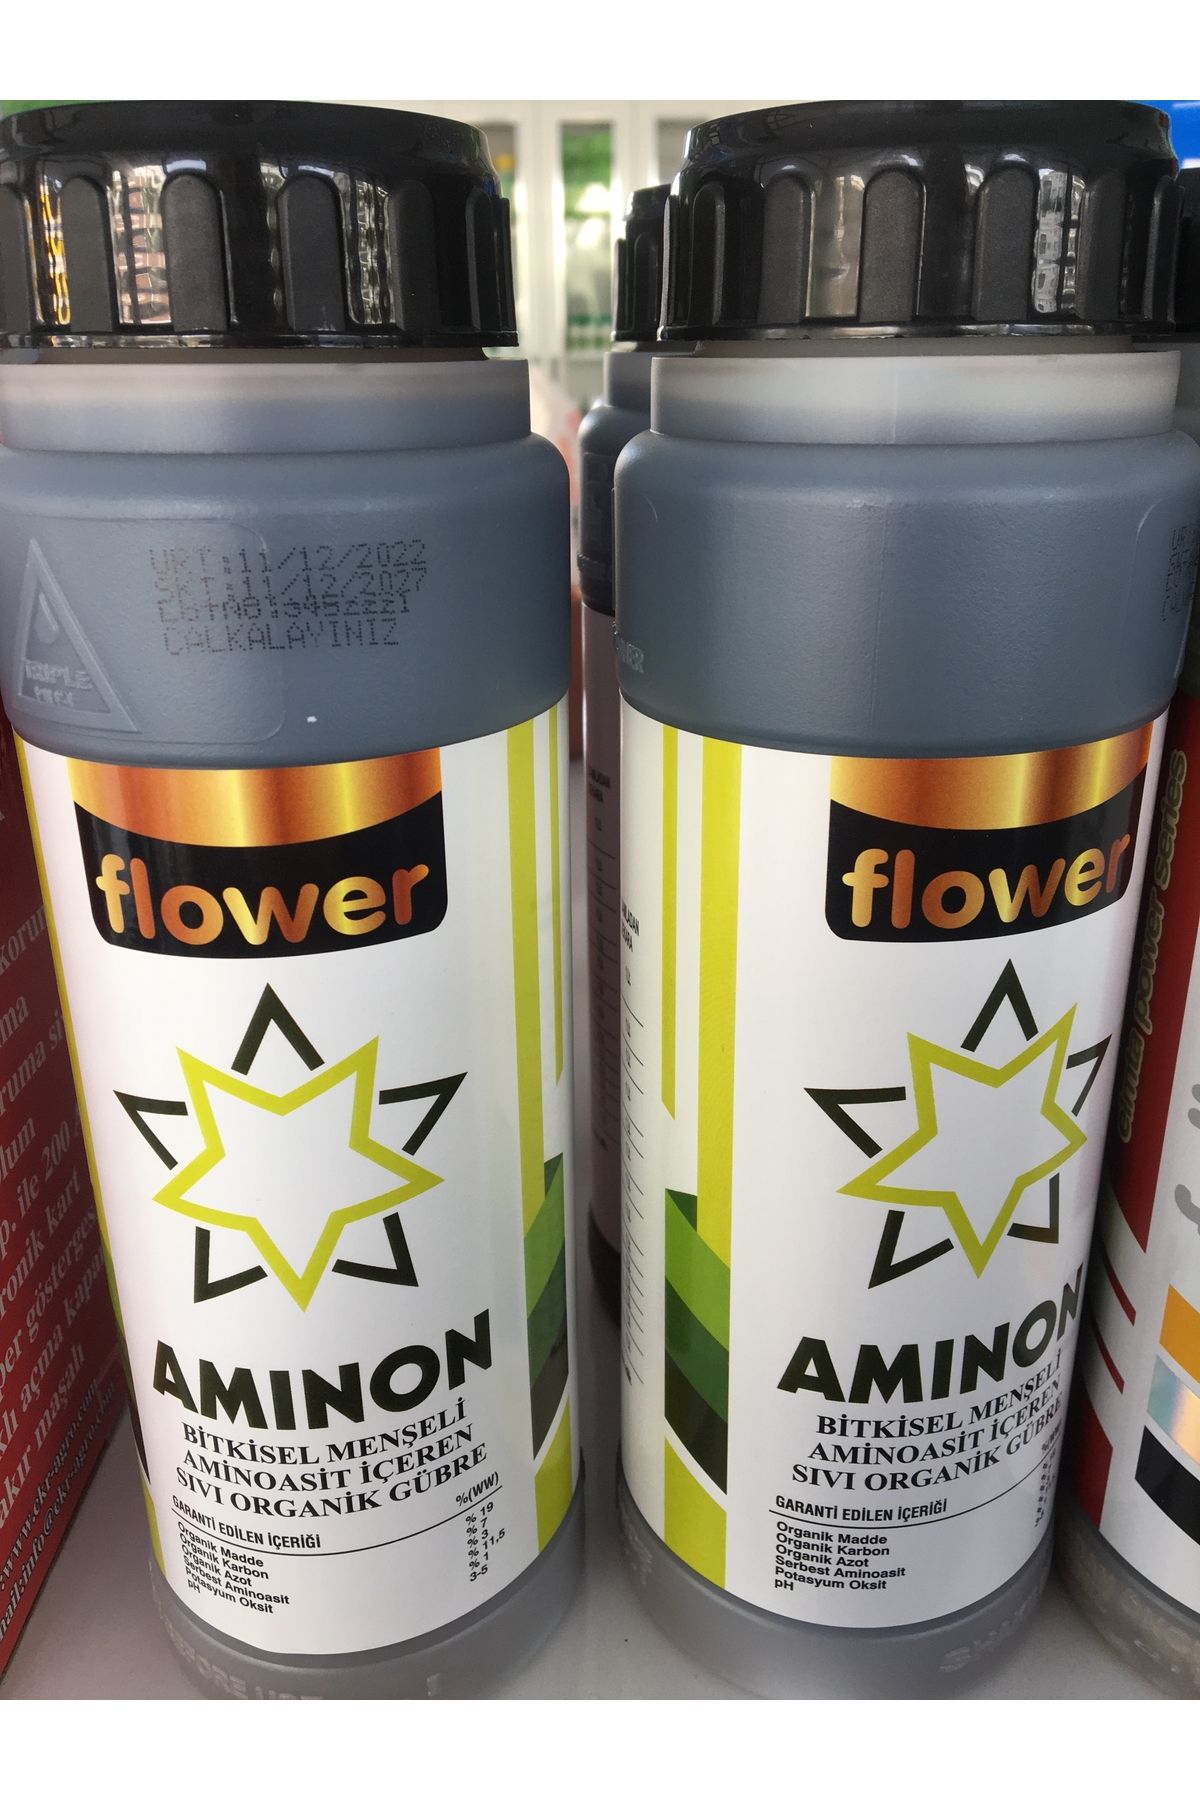 Flower Aminon Bitkisel Menşeli Aminoasit İçeren Sıvı Organik Gübre